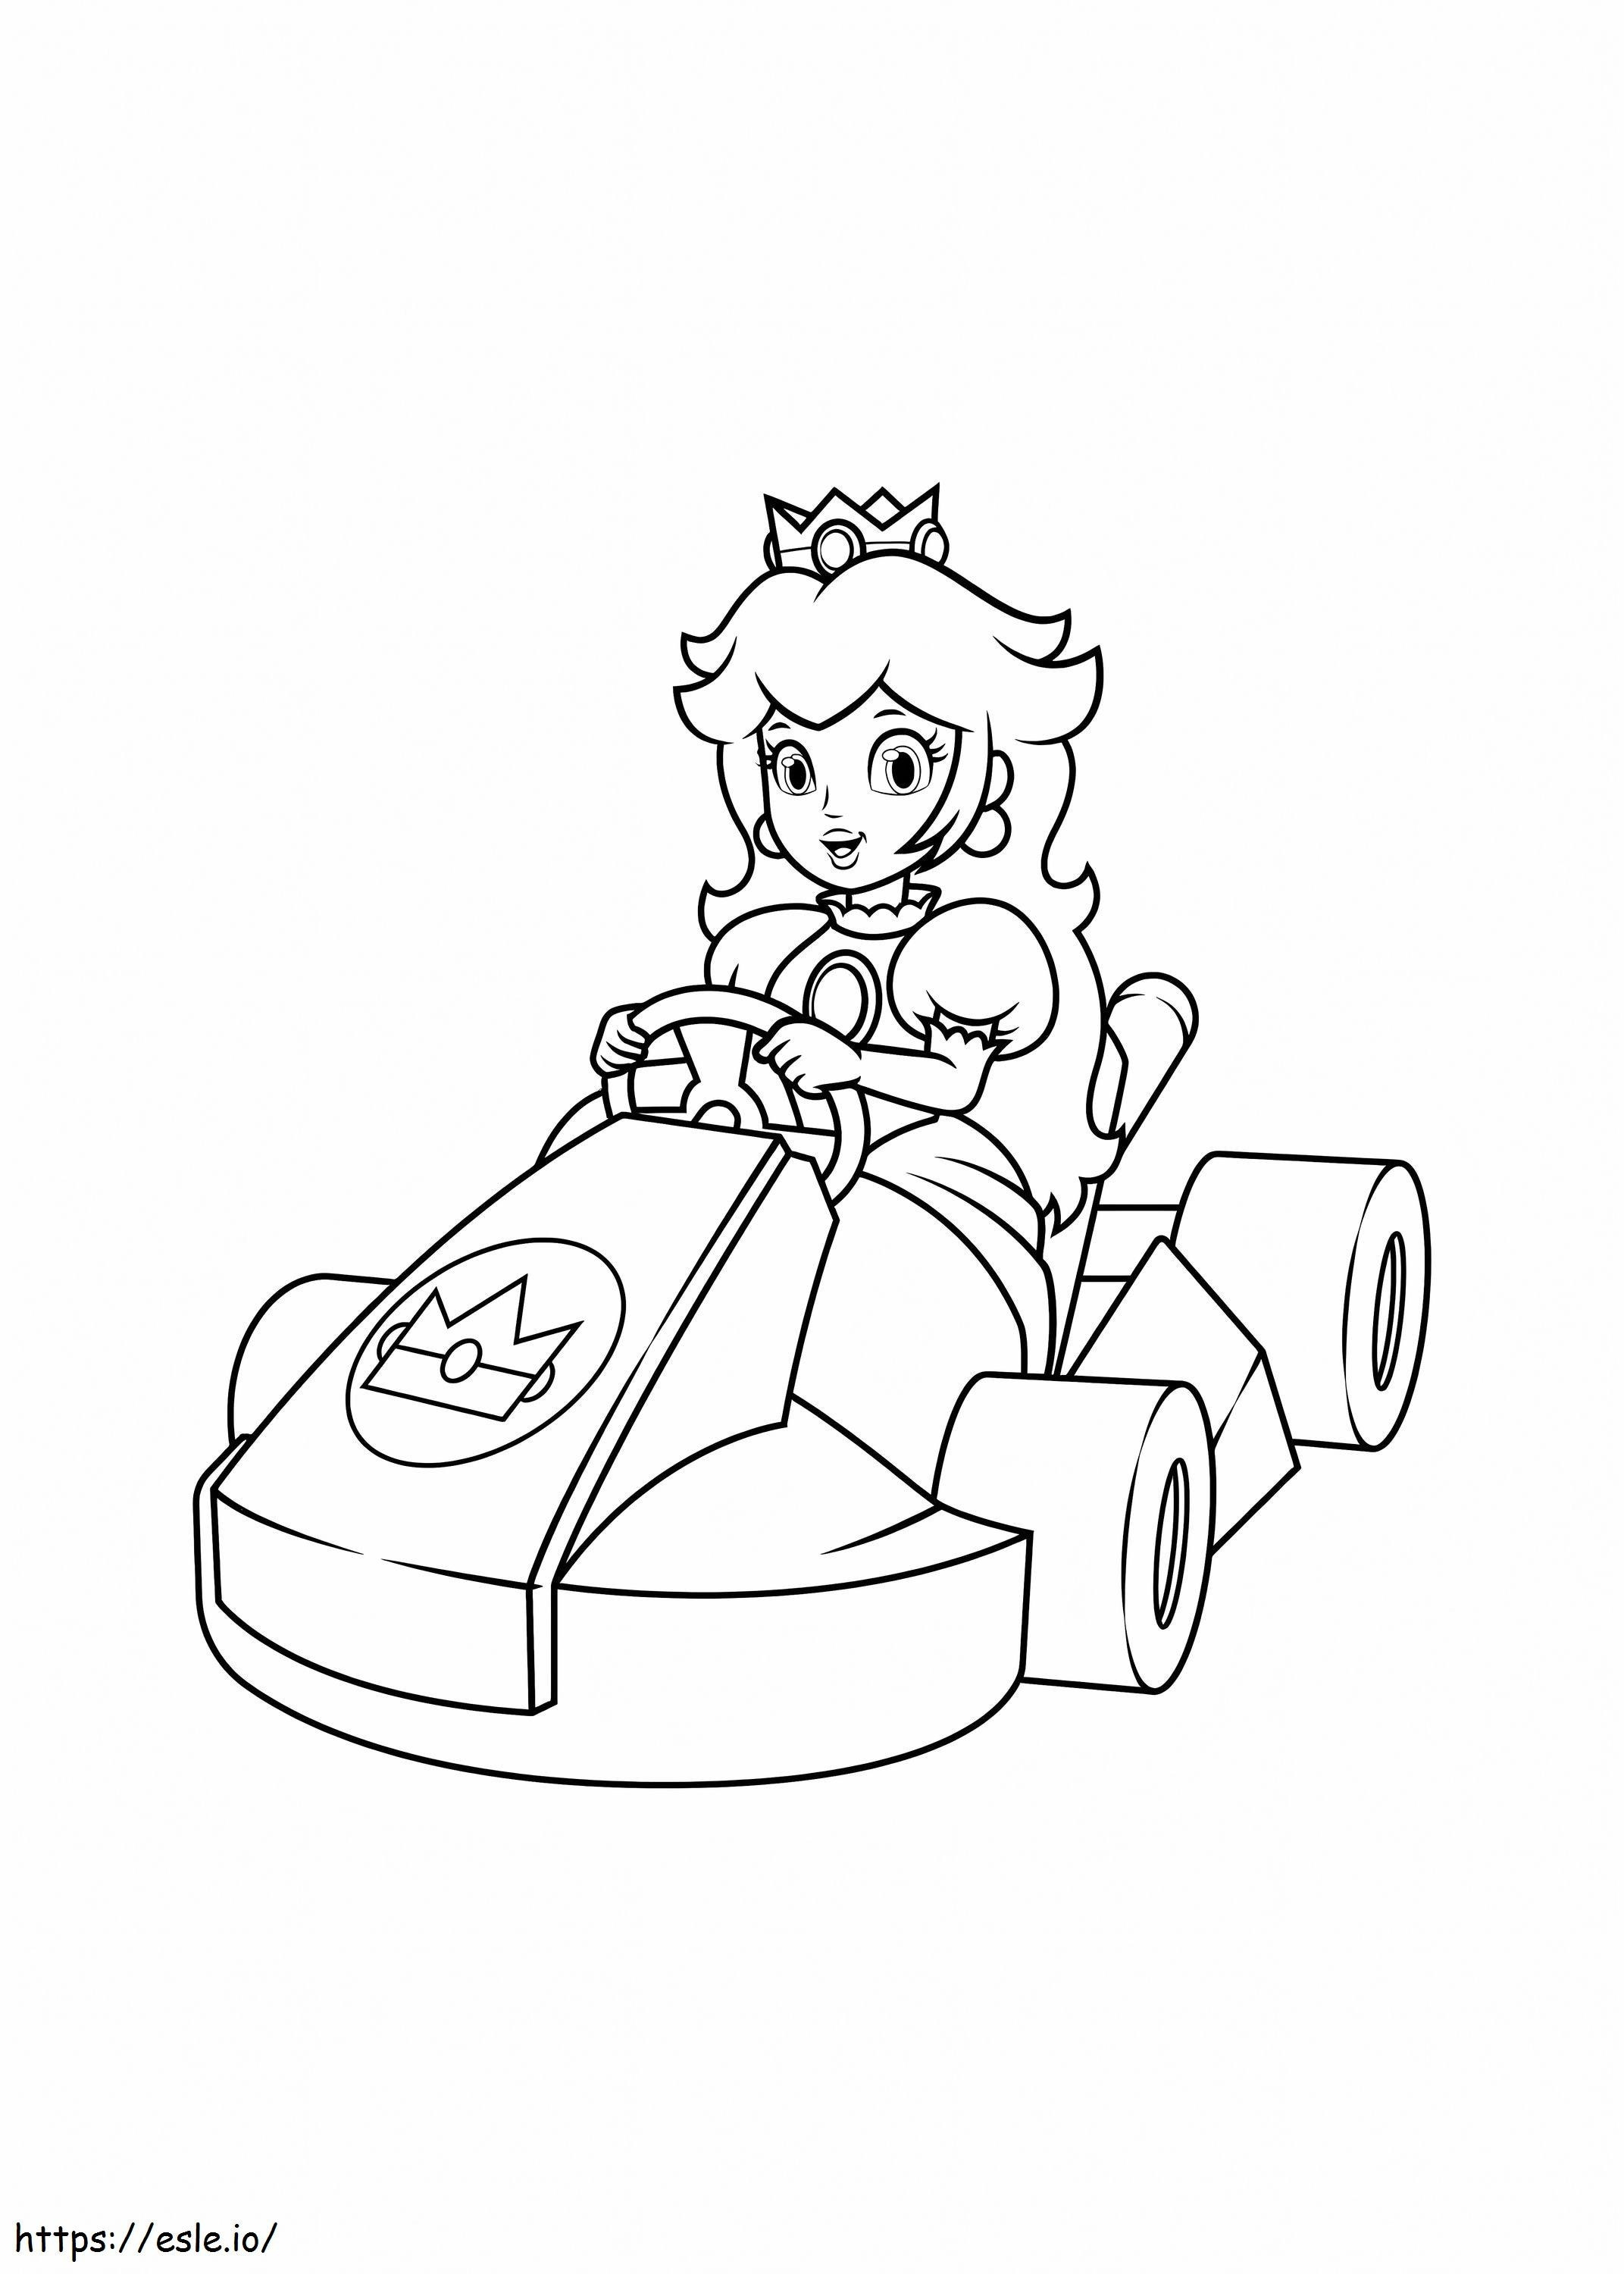 Mașina de curse a Prințesei Peach de colorat